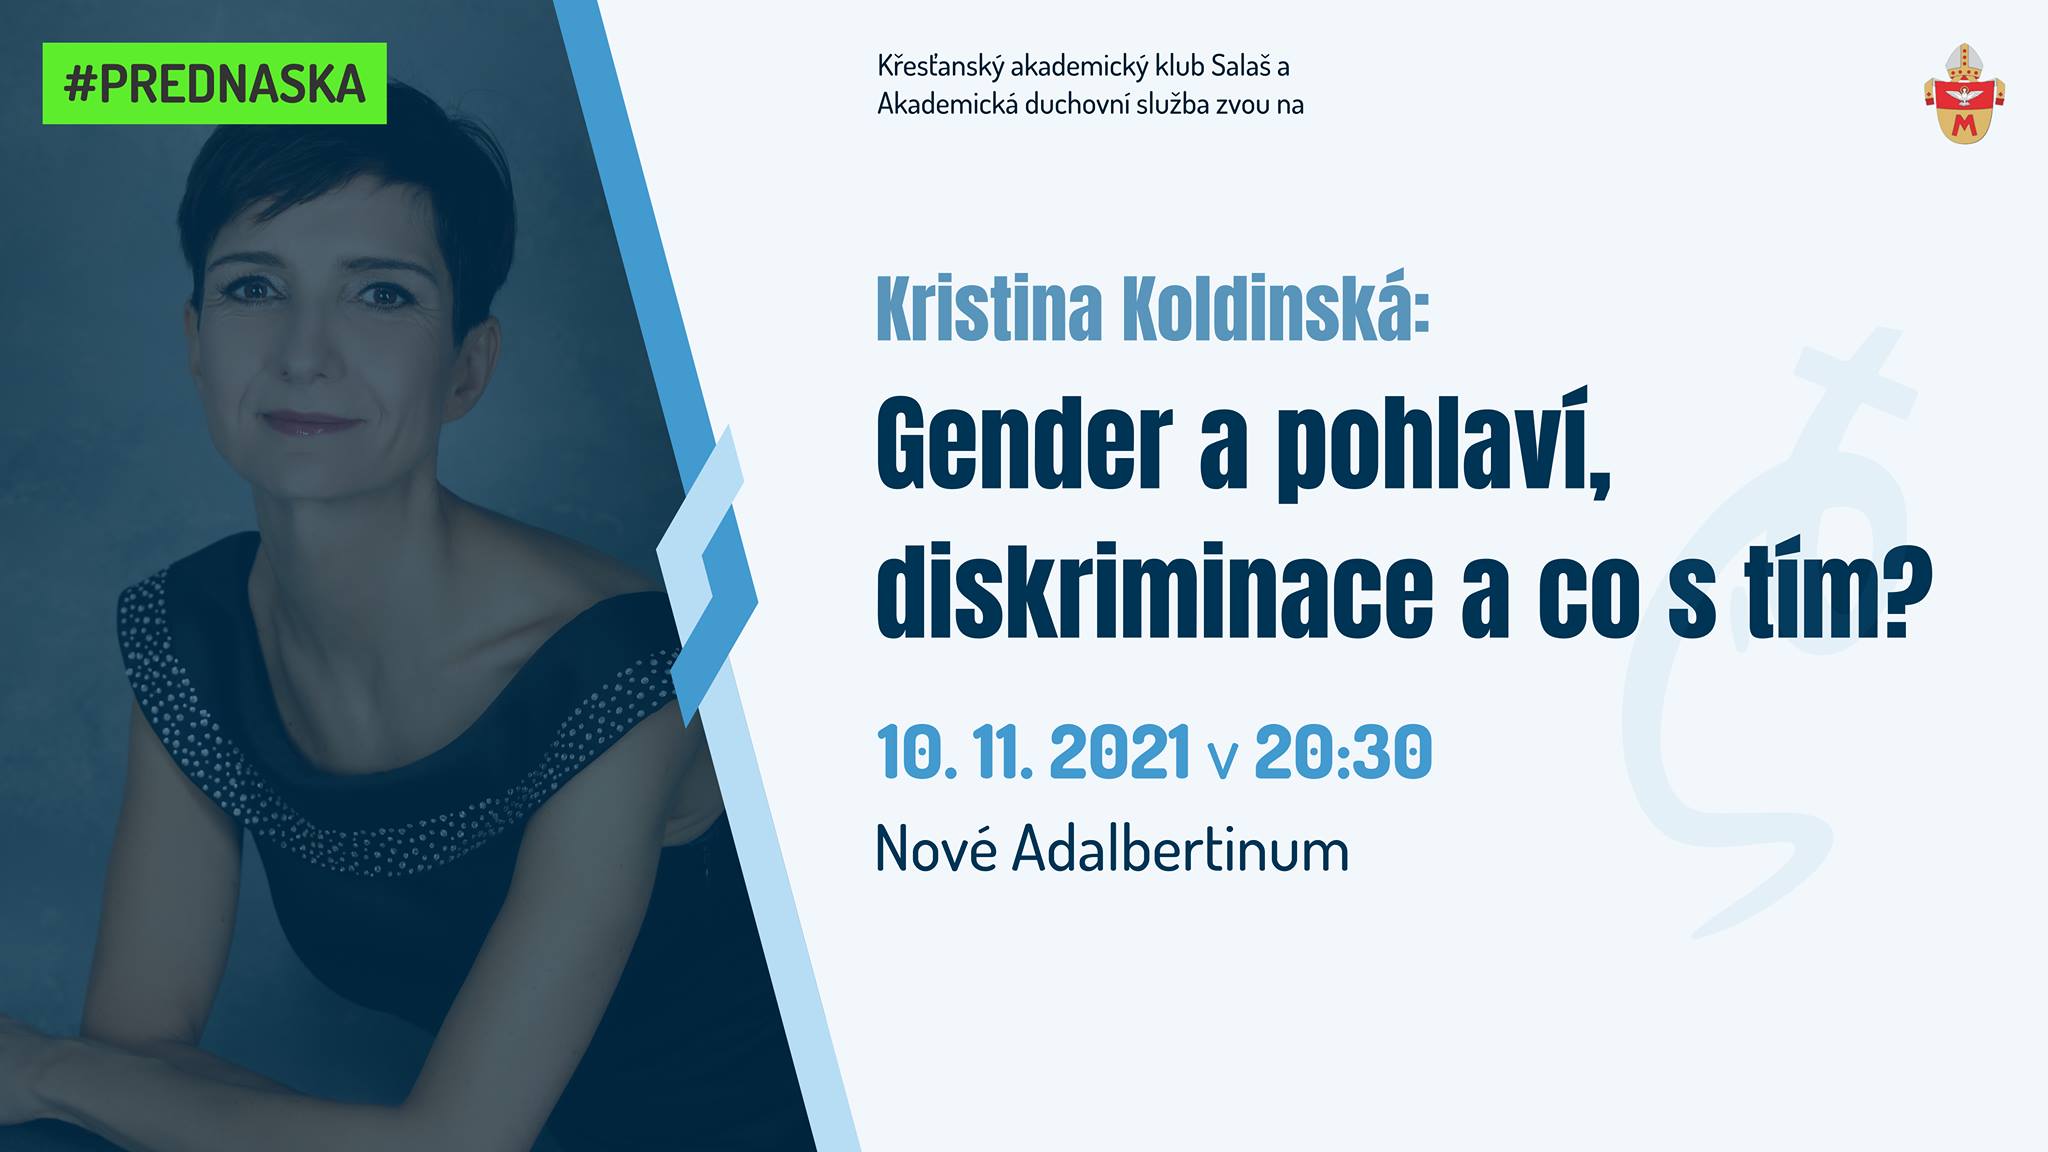 Kristina Koldinská: Gender a pohlaví, diskriminace a co s tím?